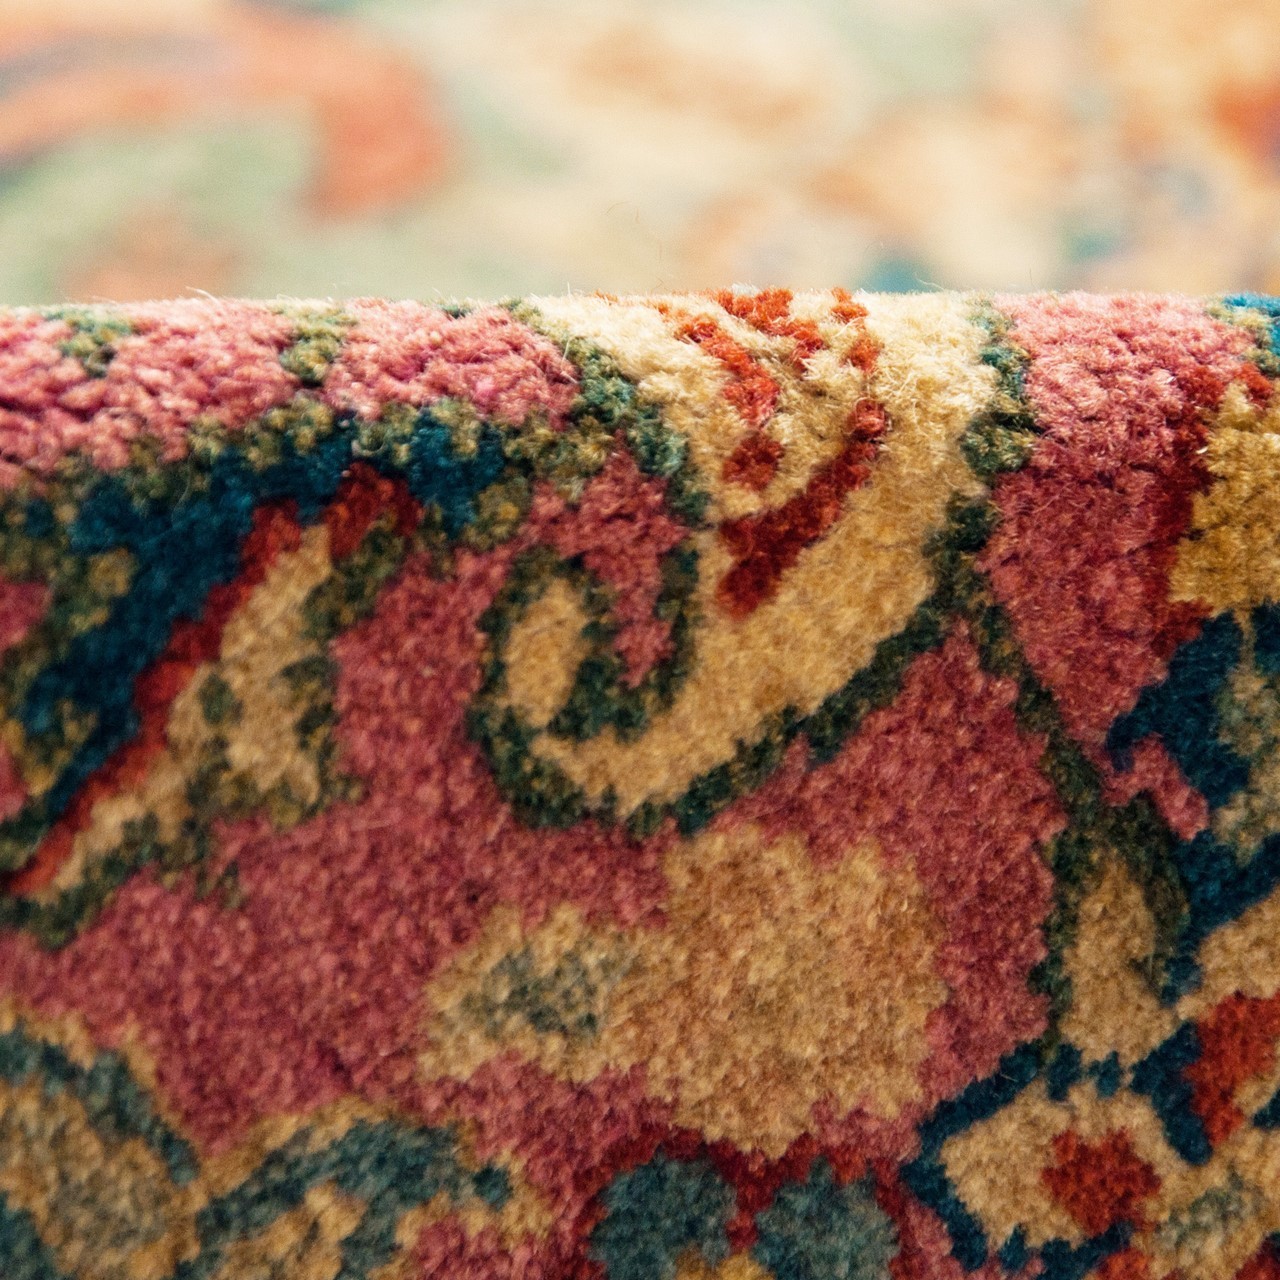 Ferahan Carpet Ref 101998